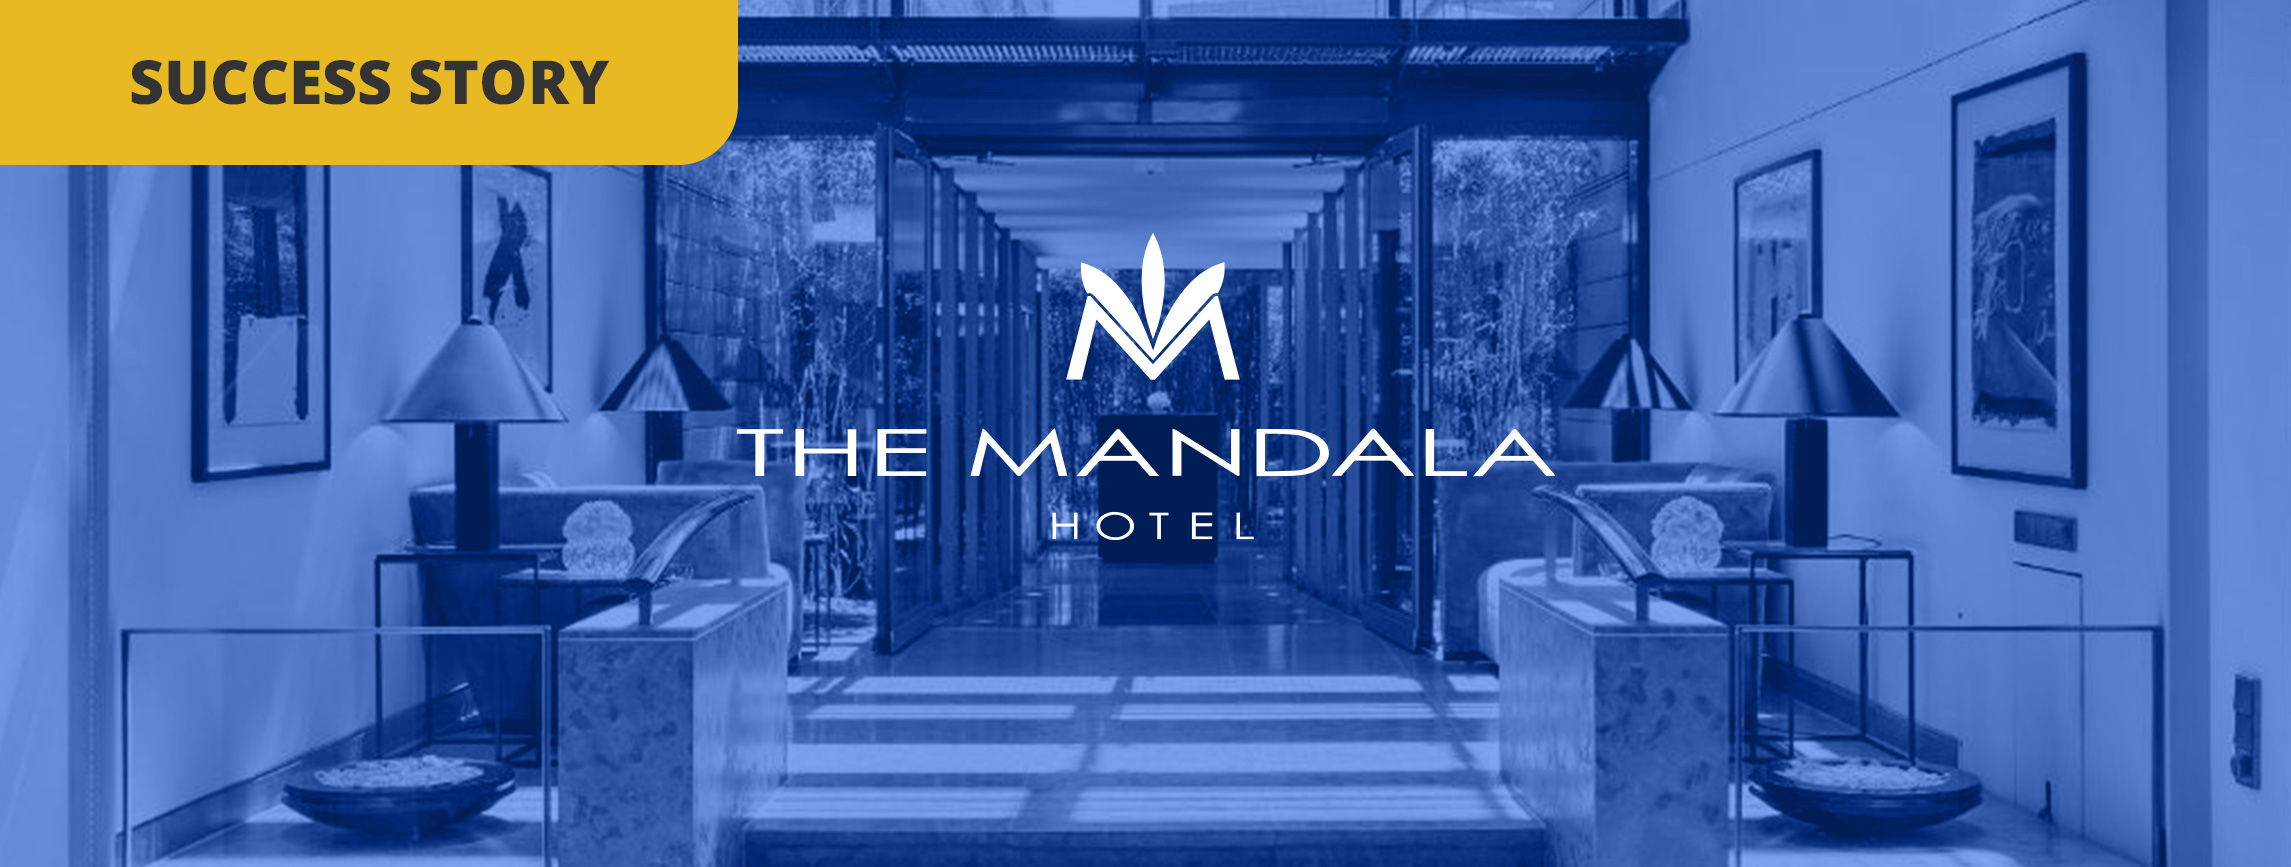 The Mandala Hotel: come sfruttare il questionario during-stay per migliorare le esperienze degli ospiti